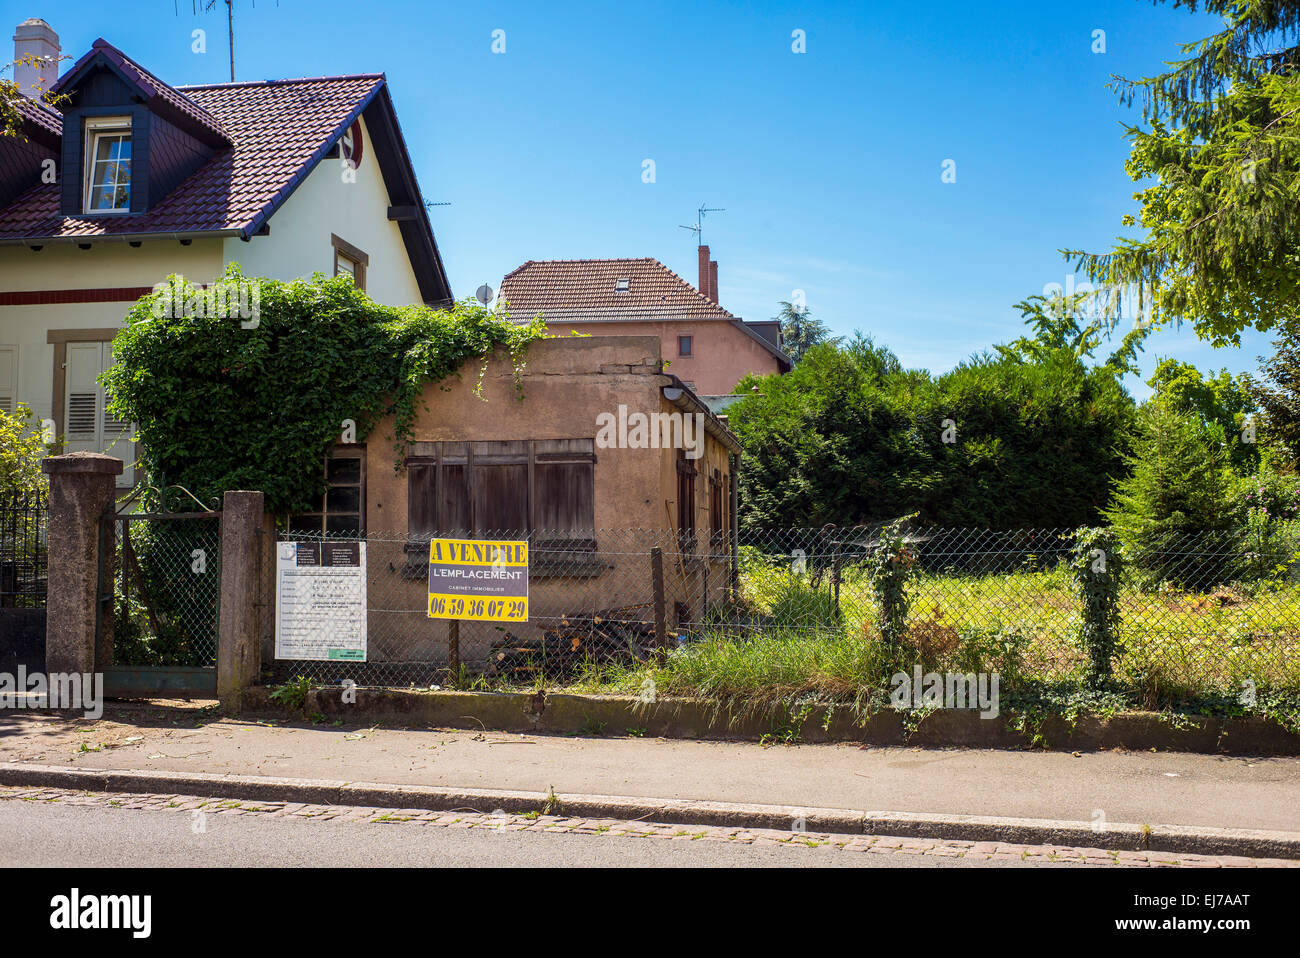 Verlassene kleine Gebäude zum Verkauf, A Vendre Zeichen, Straßburg, Elsass, Frankreich, Europa Stockfoto